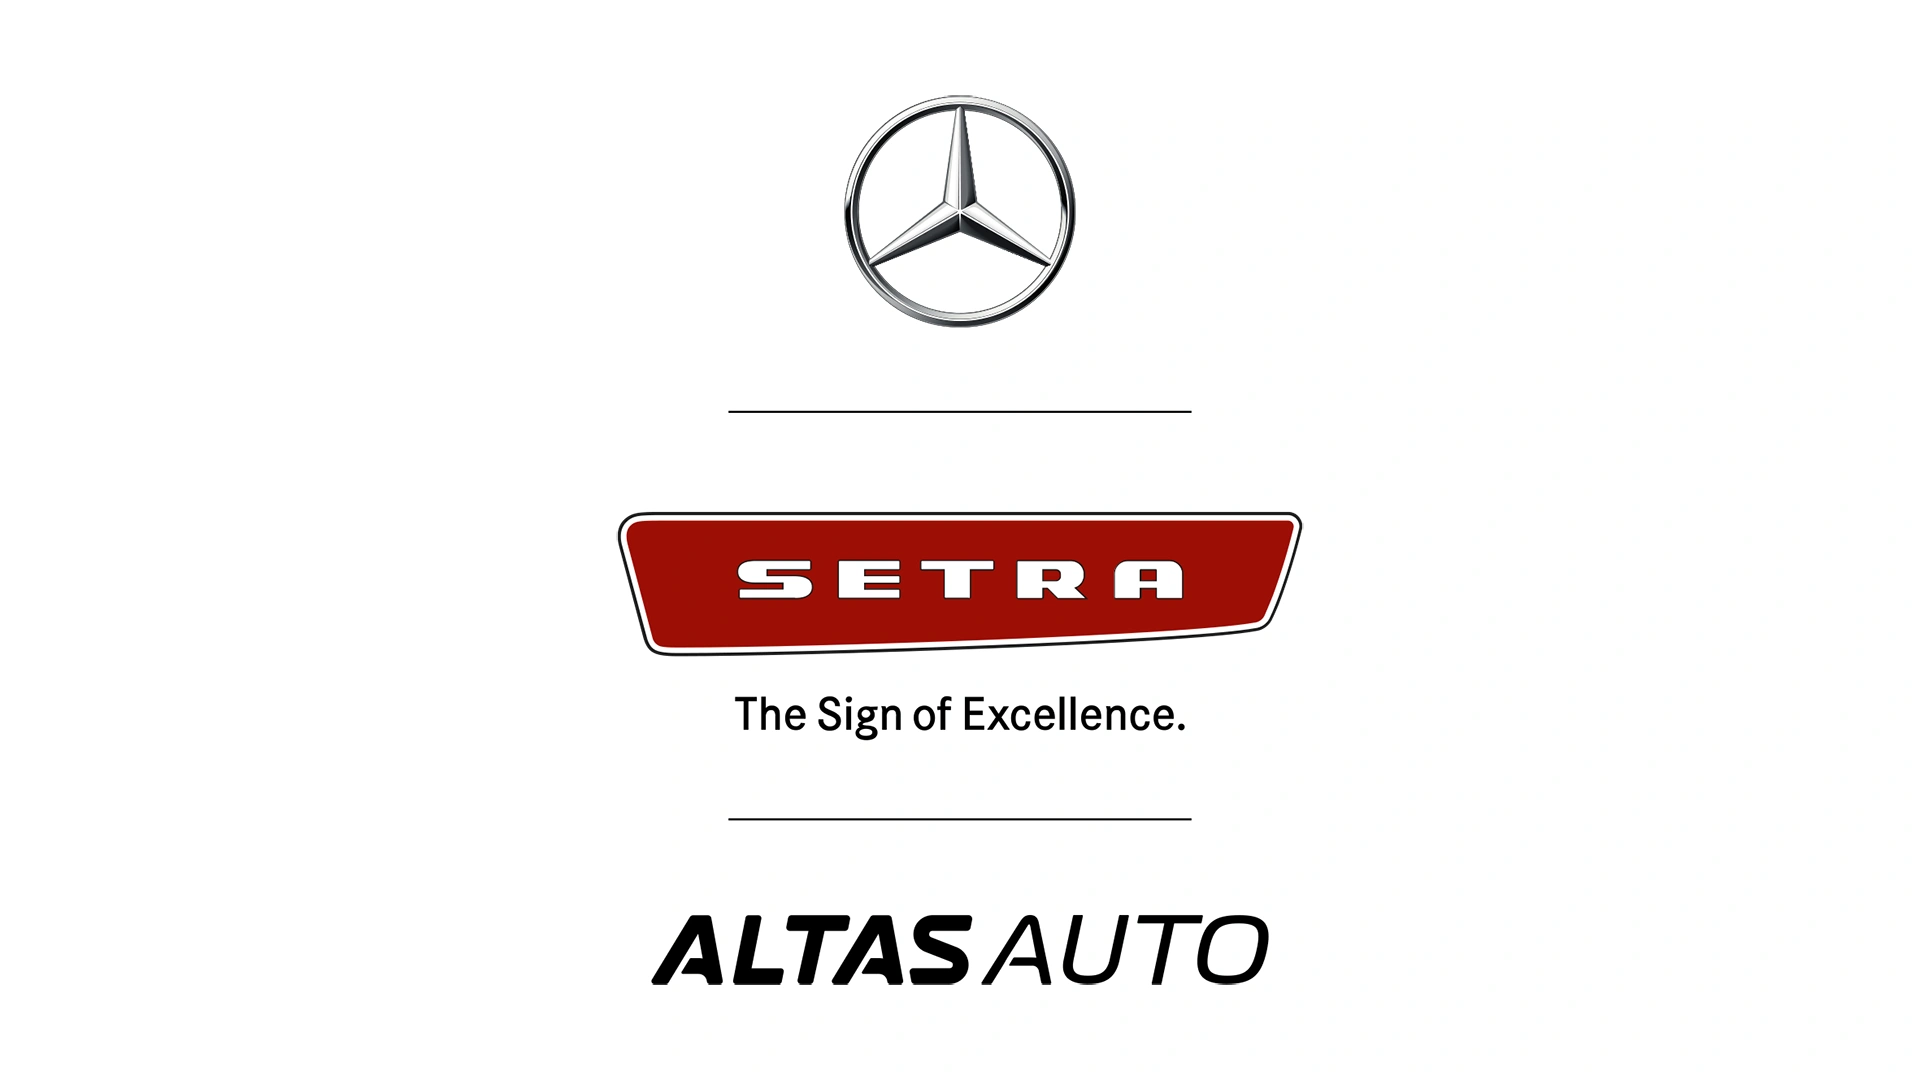 Mercedes-Benzin, Setran ja Altas Auton logot